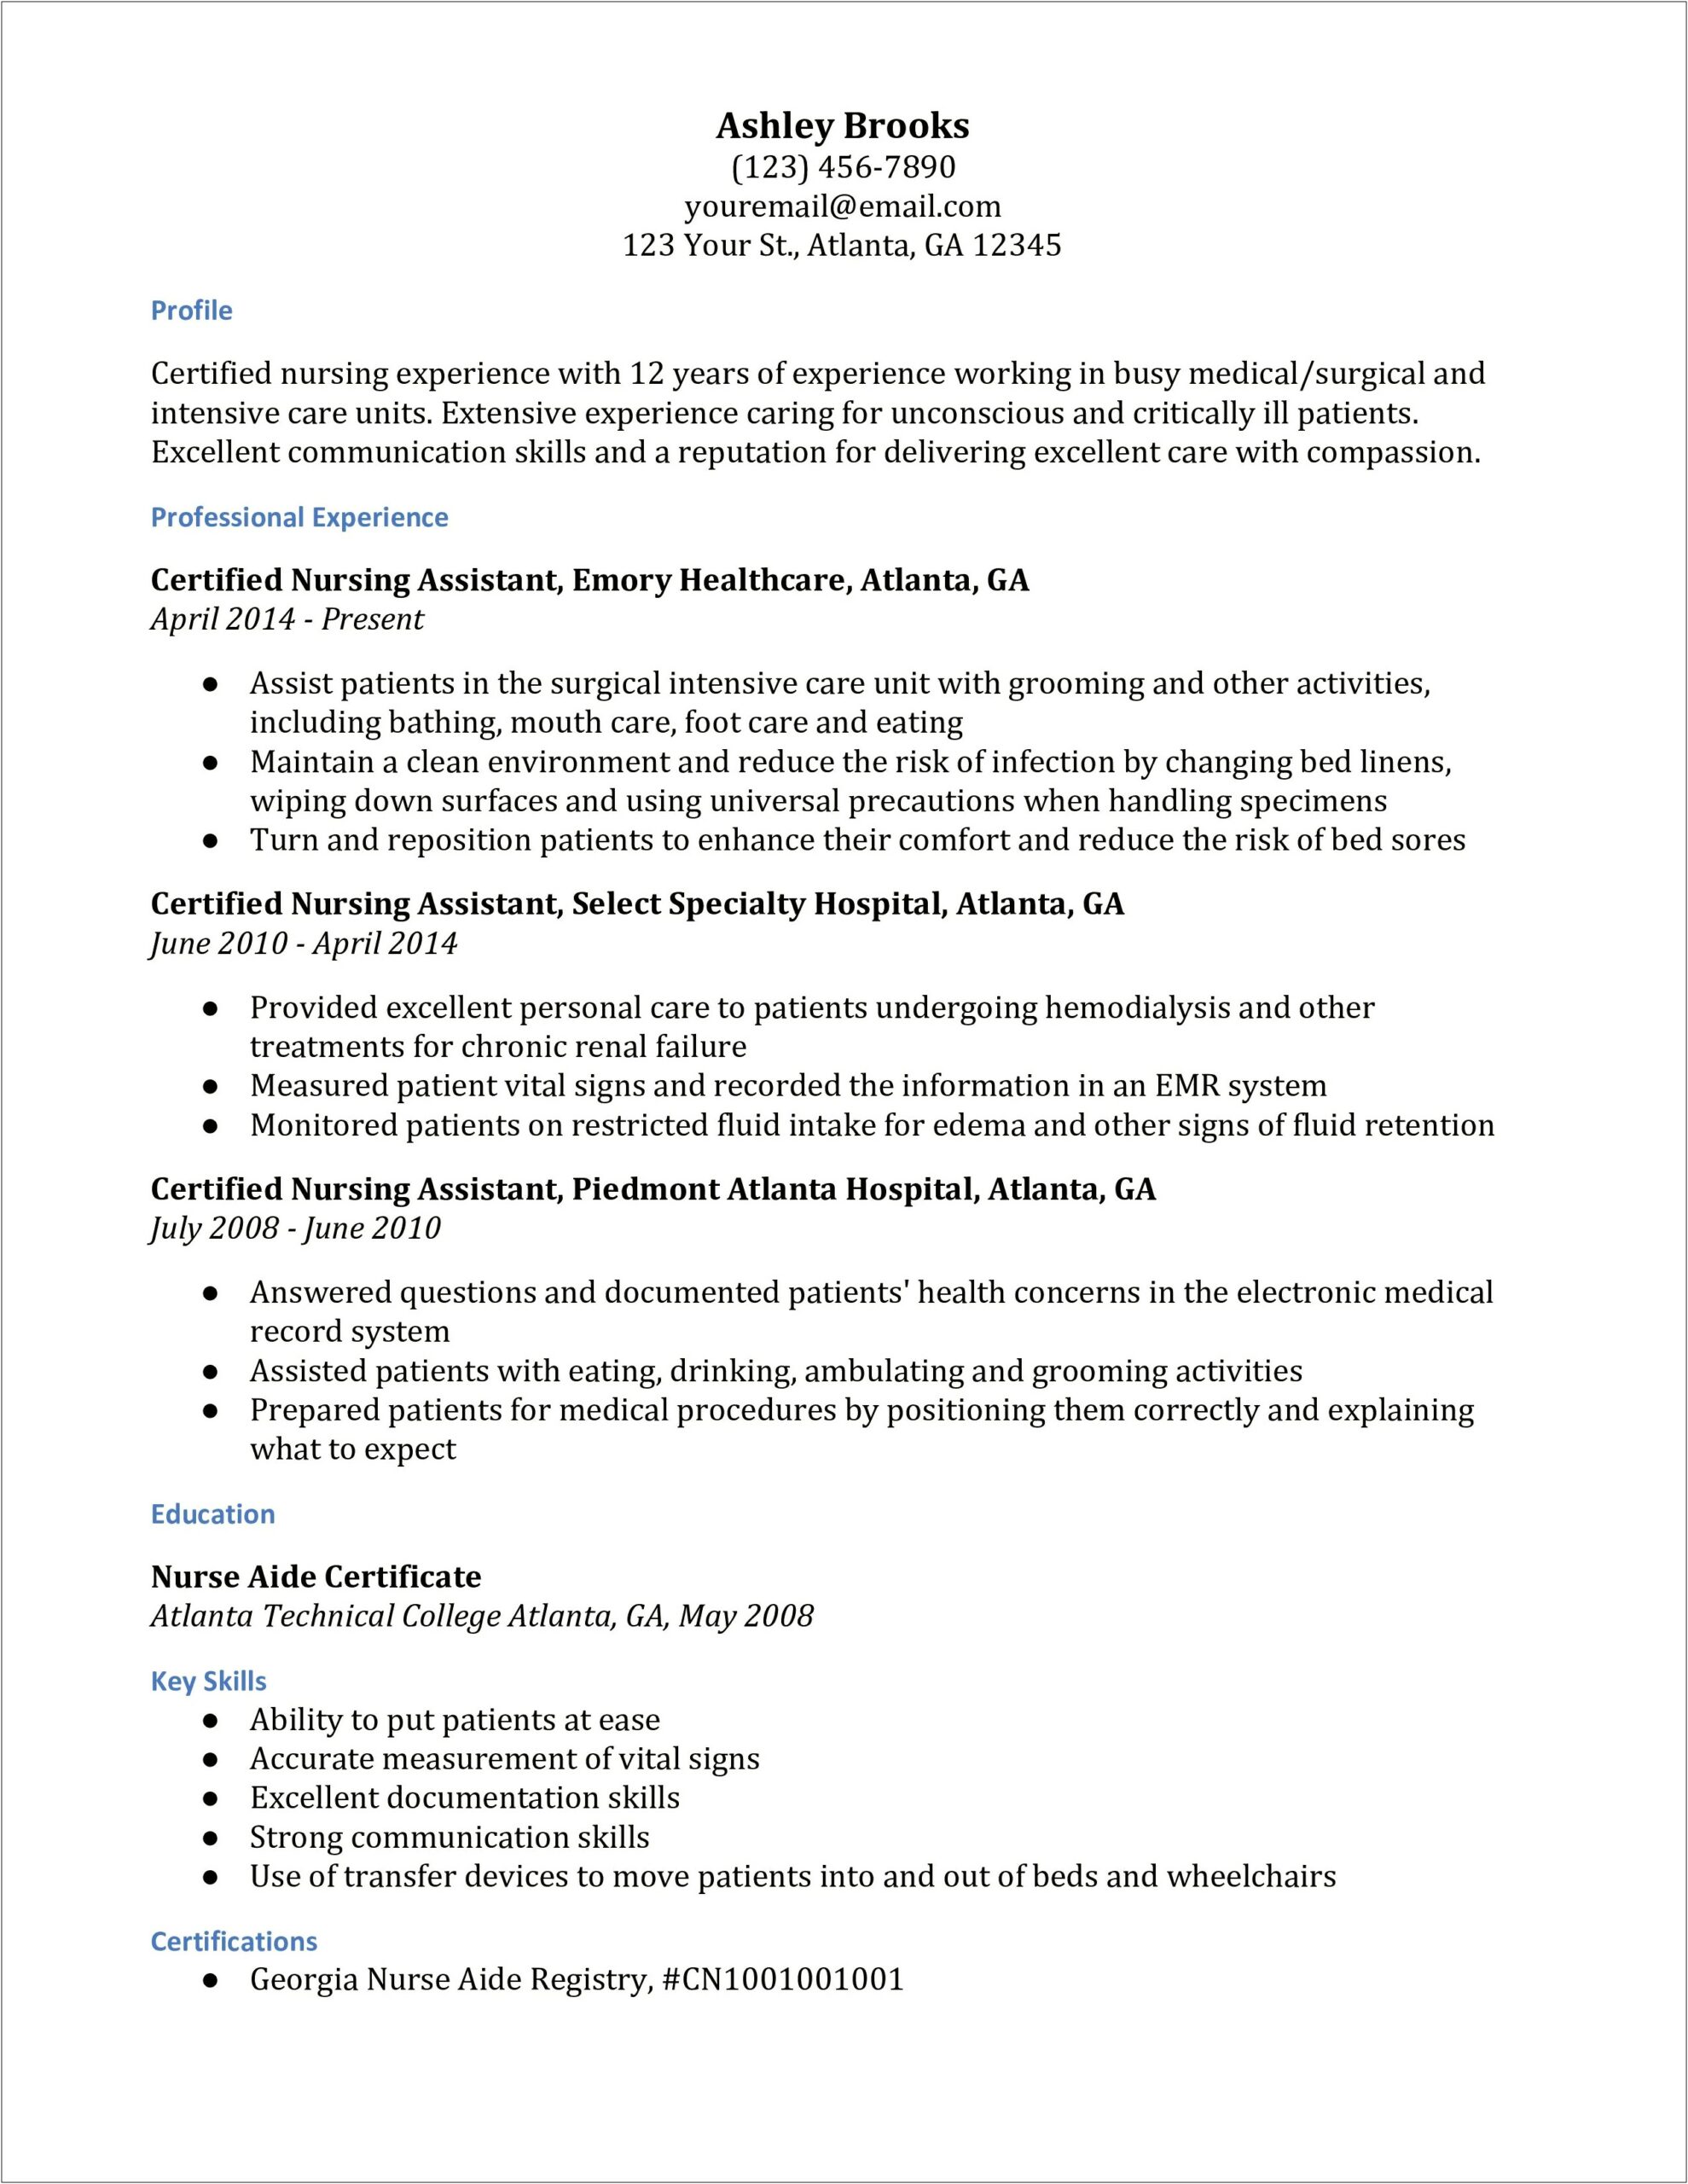 Description Of Certified Nursing Assistant For Resume